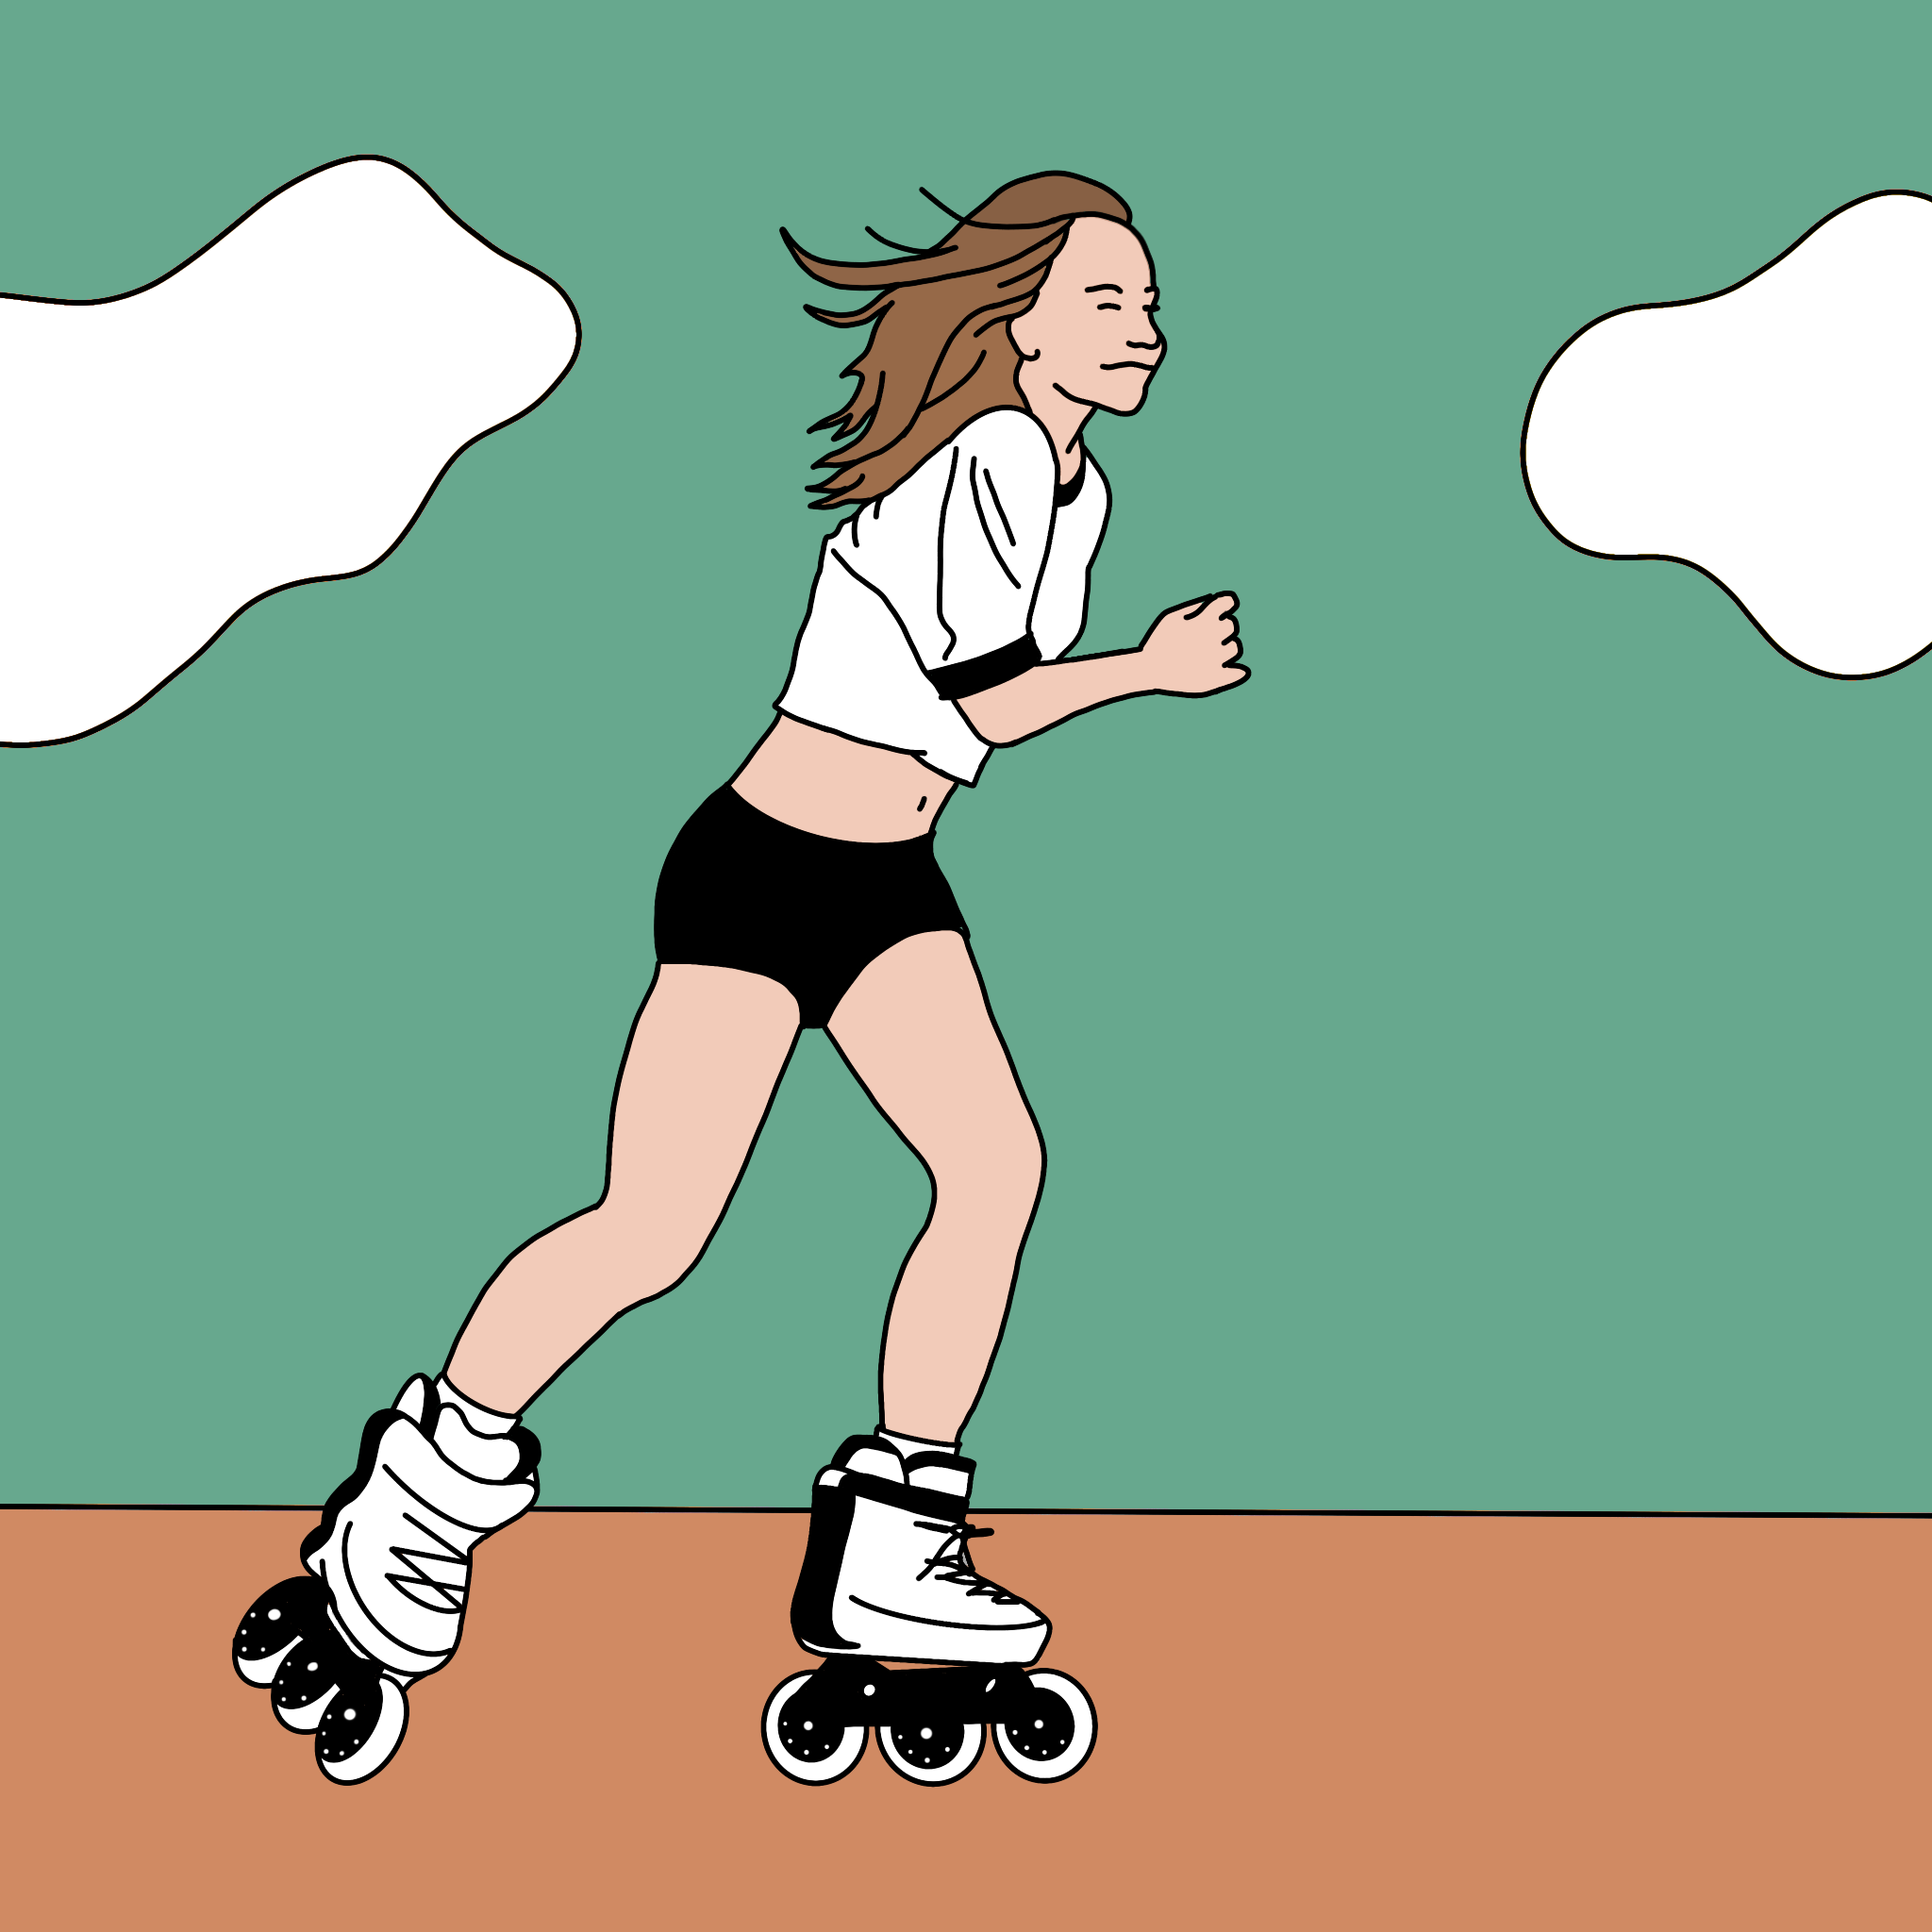 Skate Illustration